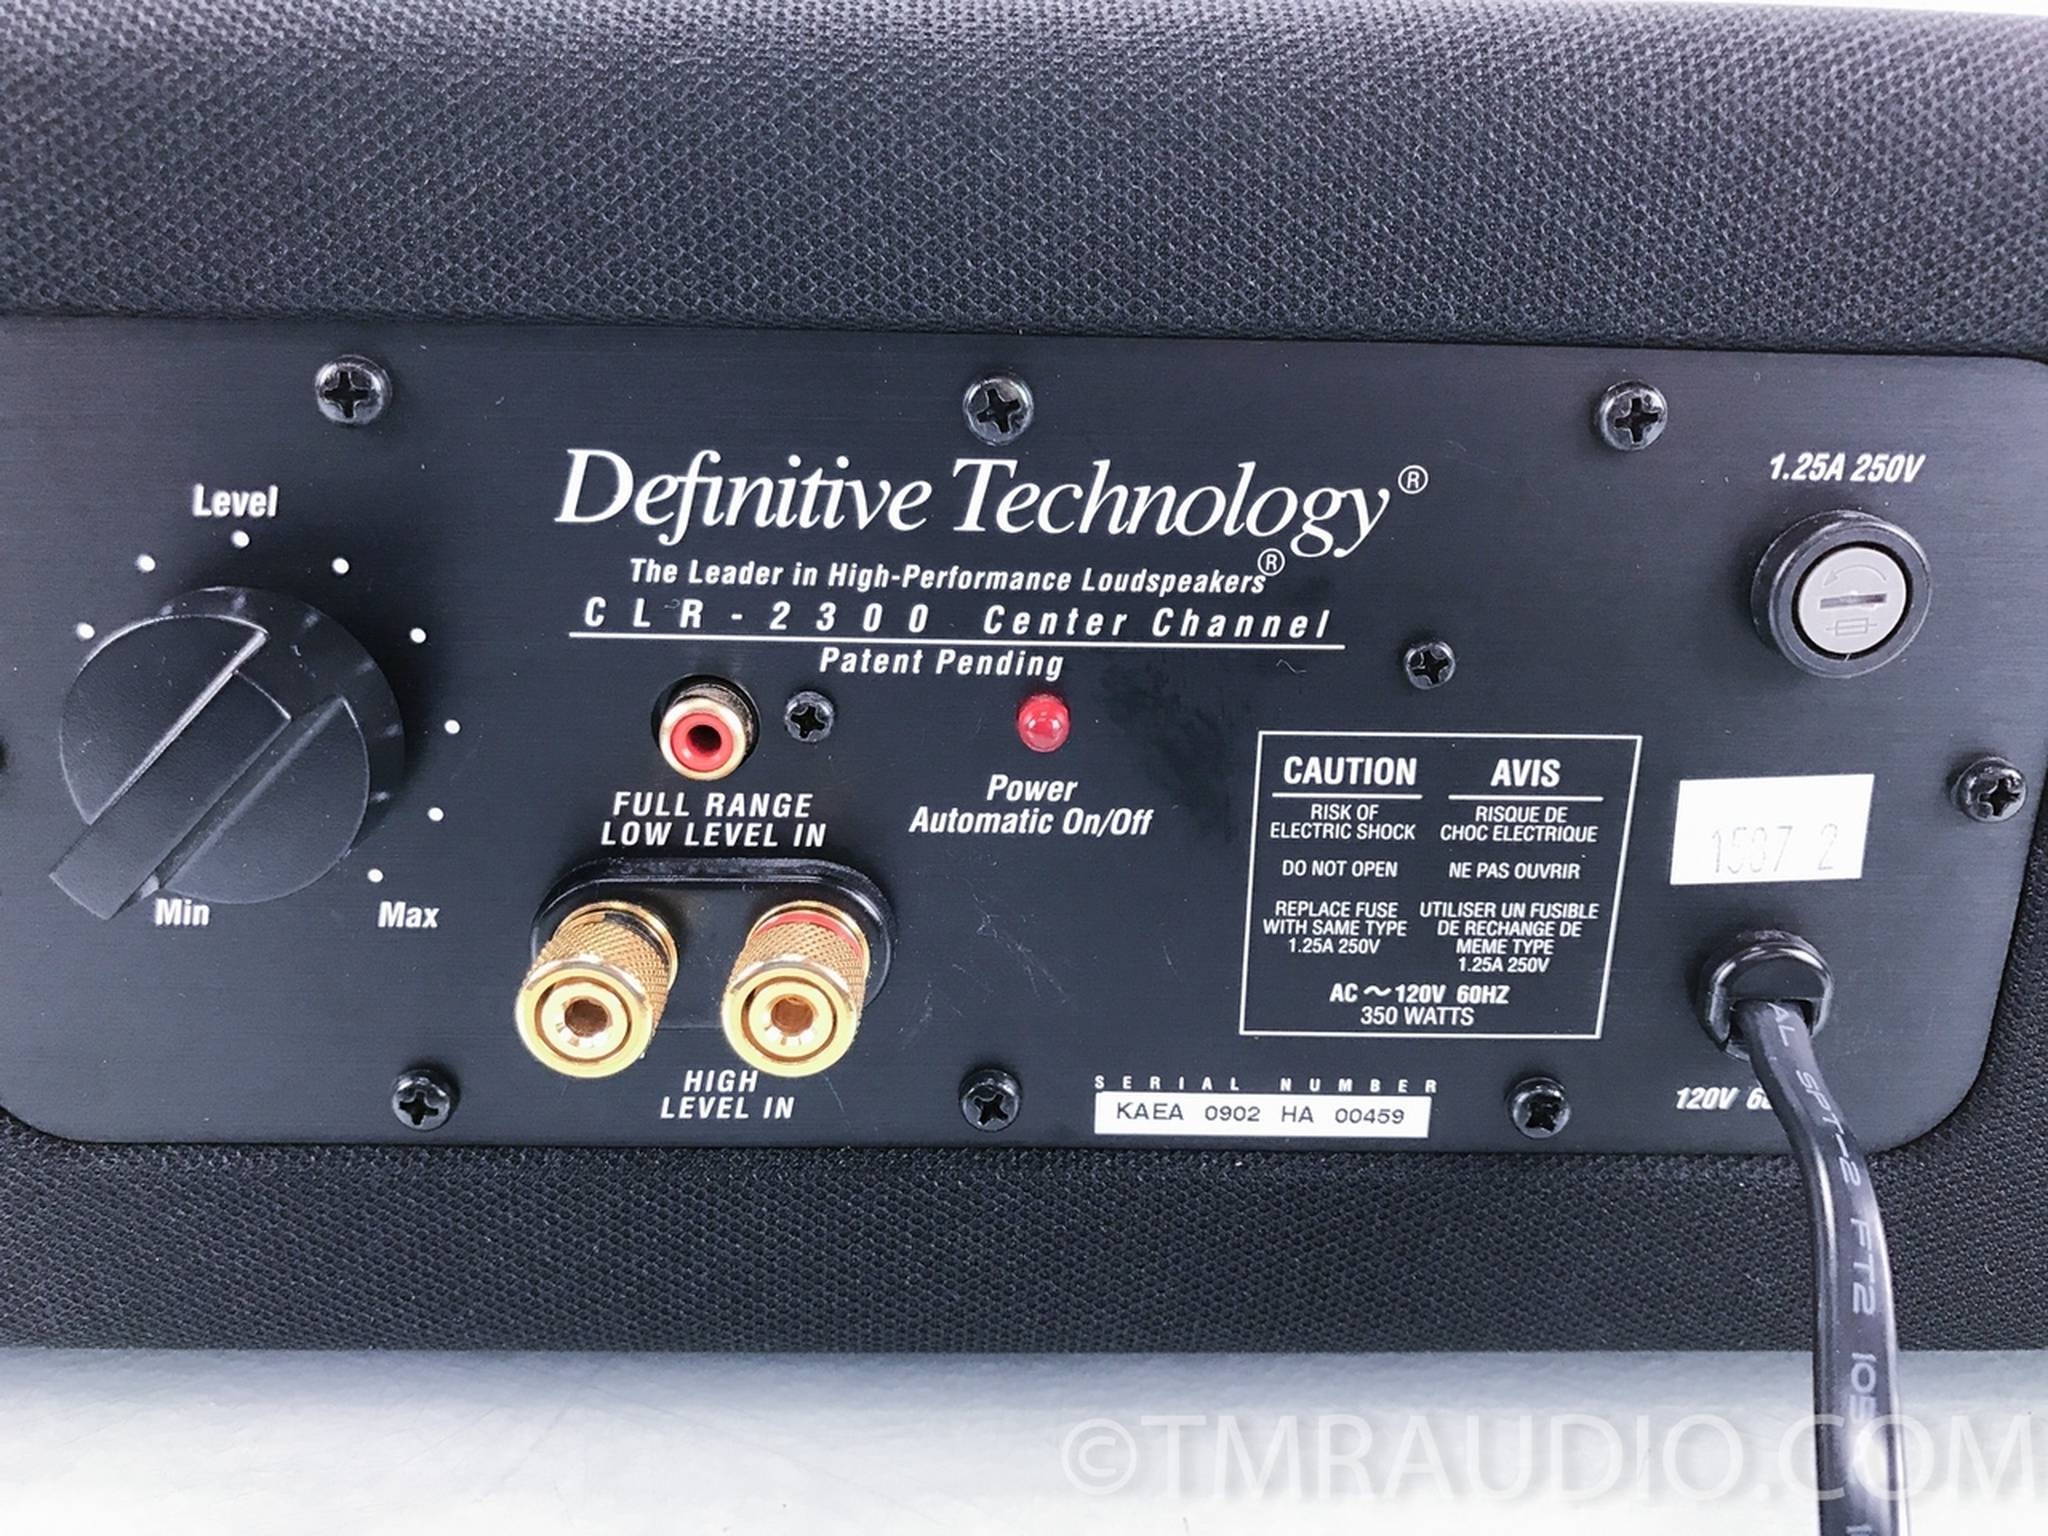 Definitive Technology C/L/R 2300